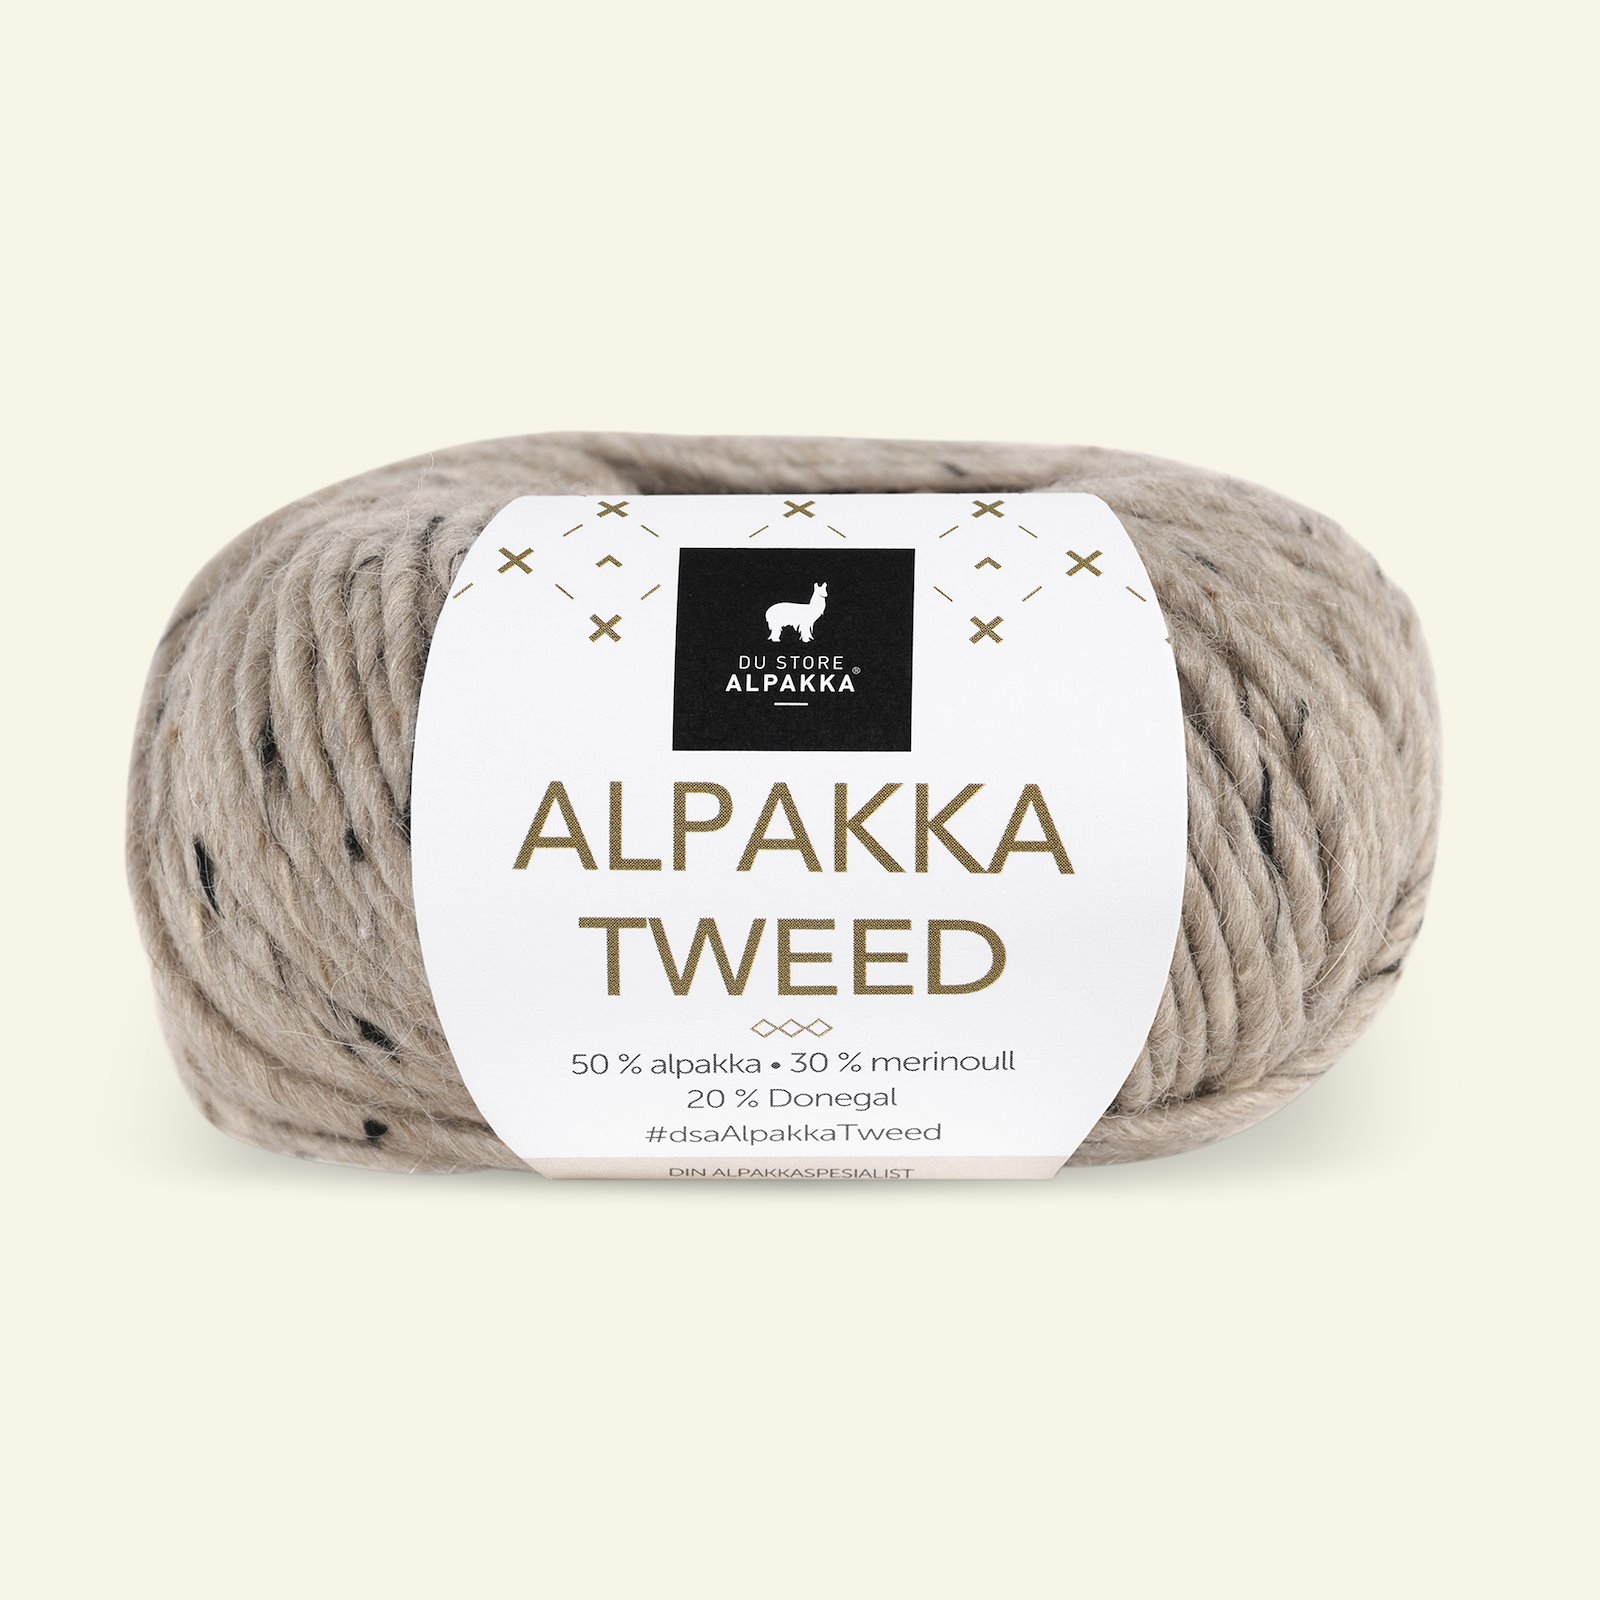 Du Store Alpakka, tweed wool yarn "Alpakka Tweed", beige (107) 90000523_pack